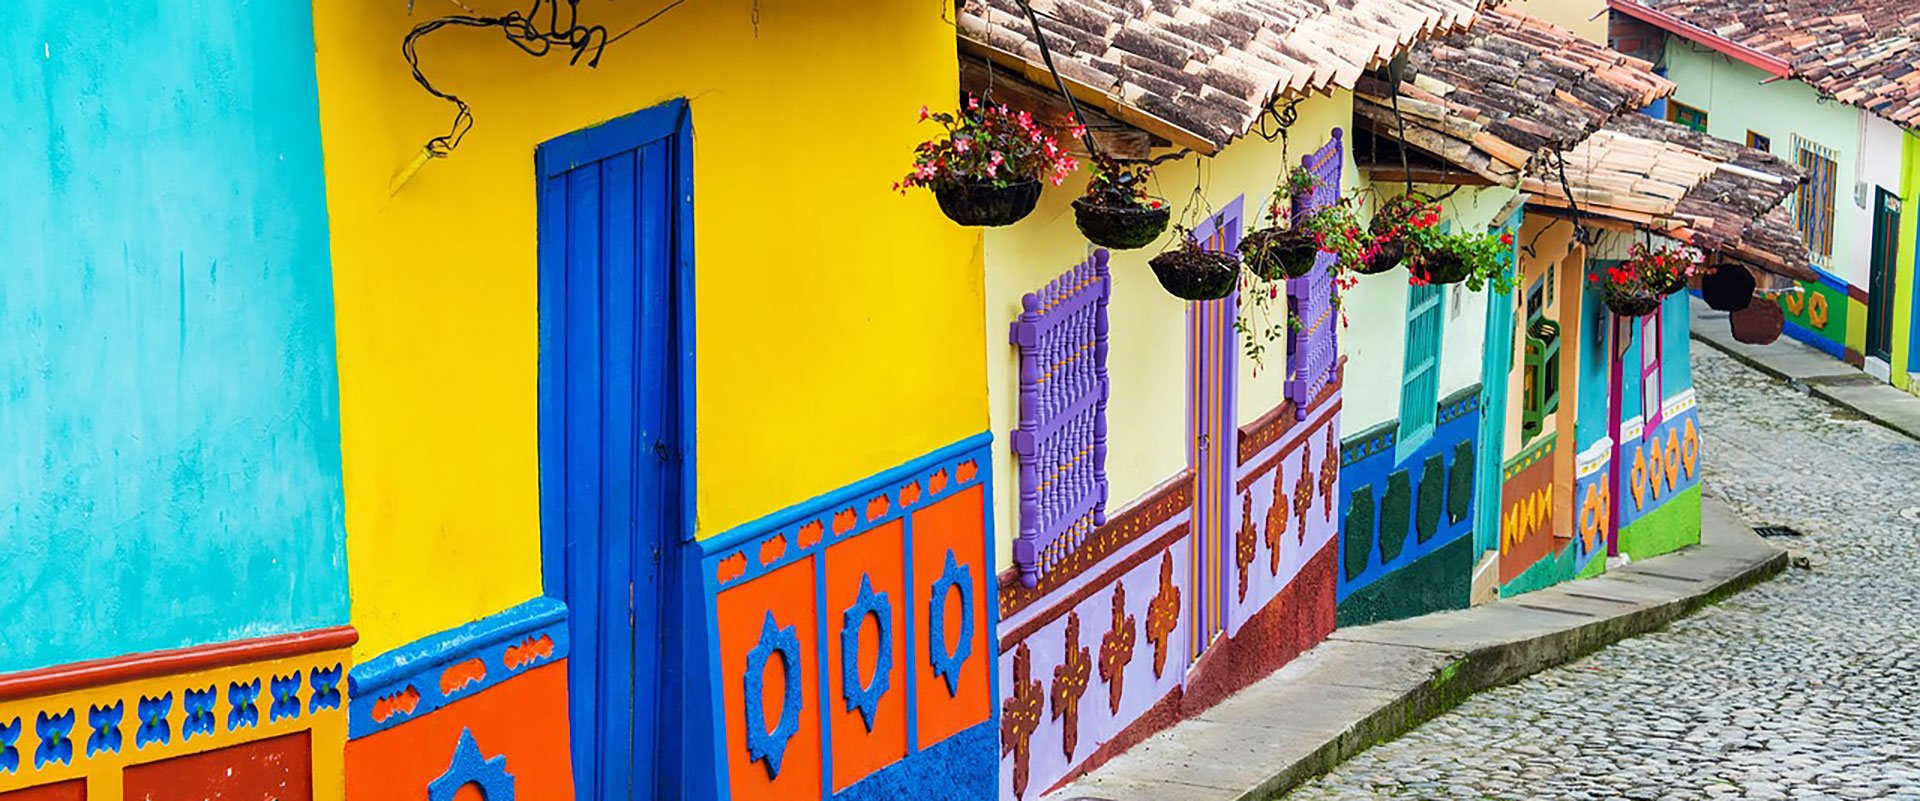 maisons colorées typiques rue pavée colombie bogota capitale